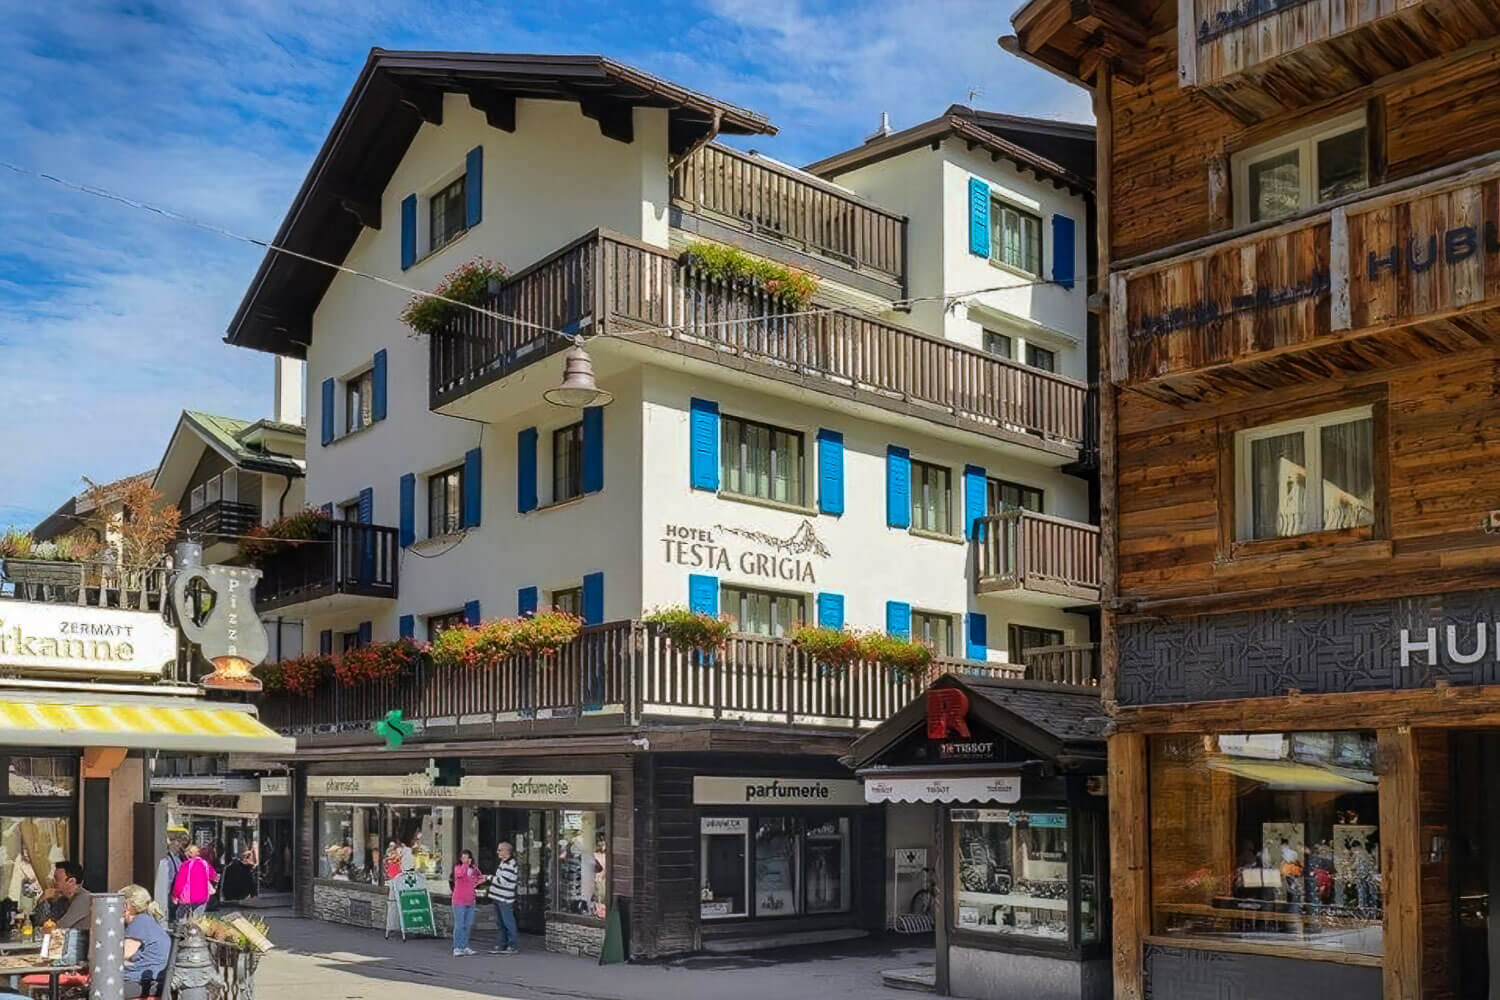 Hotel Garni Testa Grigia in Zermatt